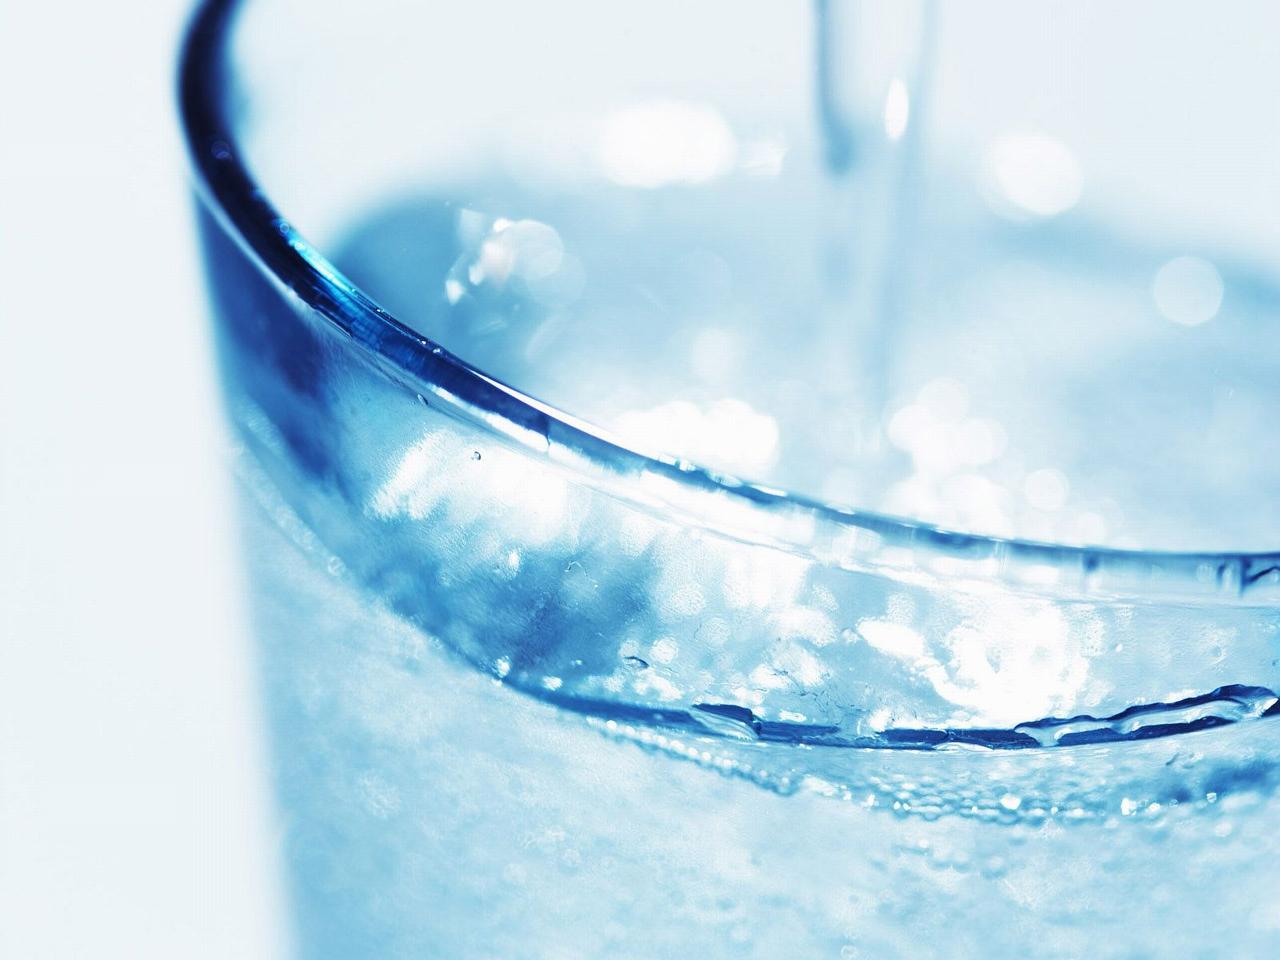 обои Чистая вода в голубом стакане фото